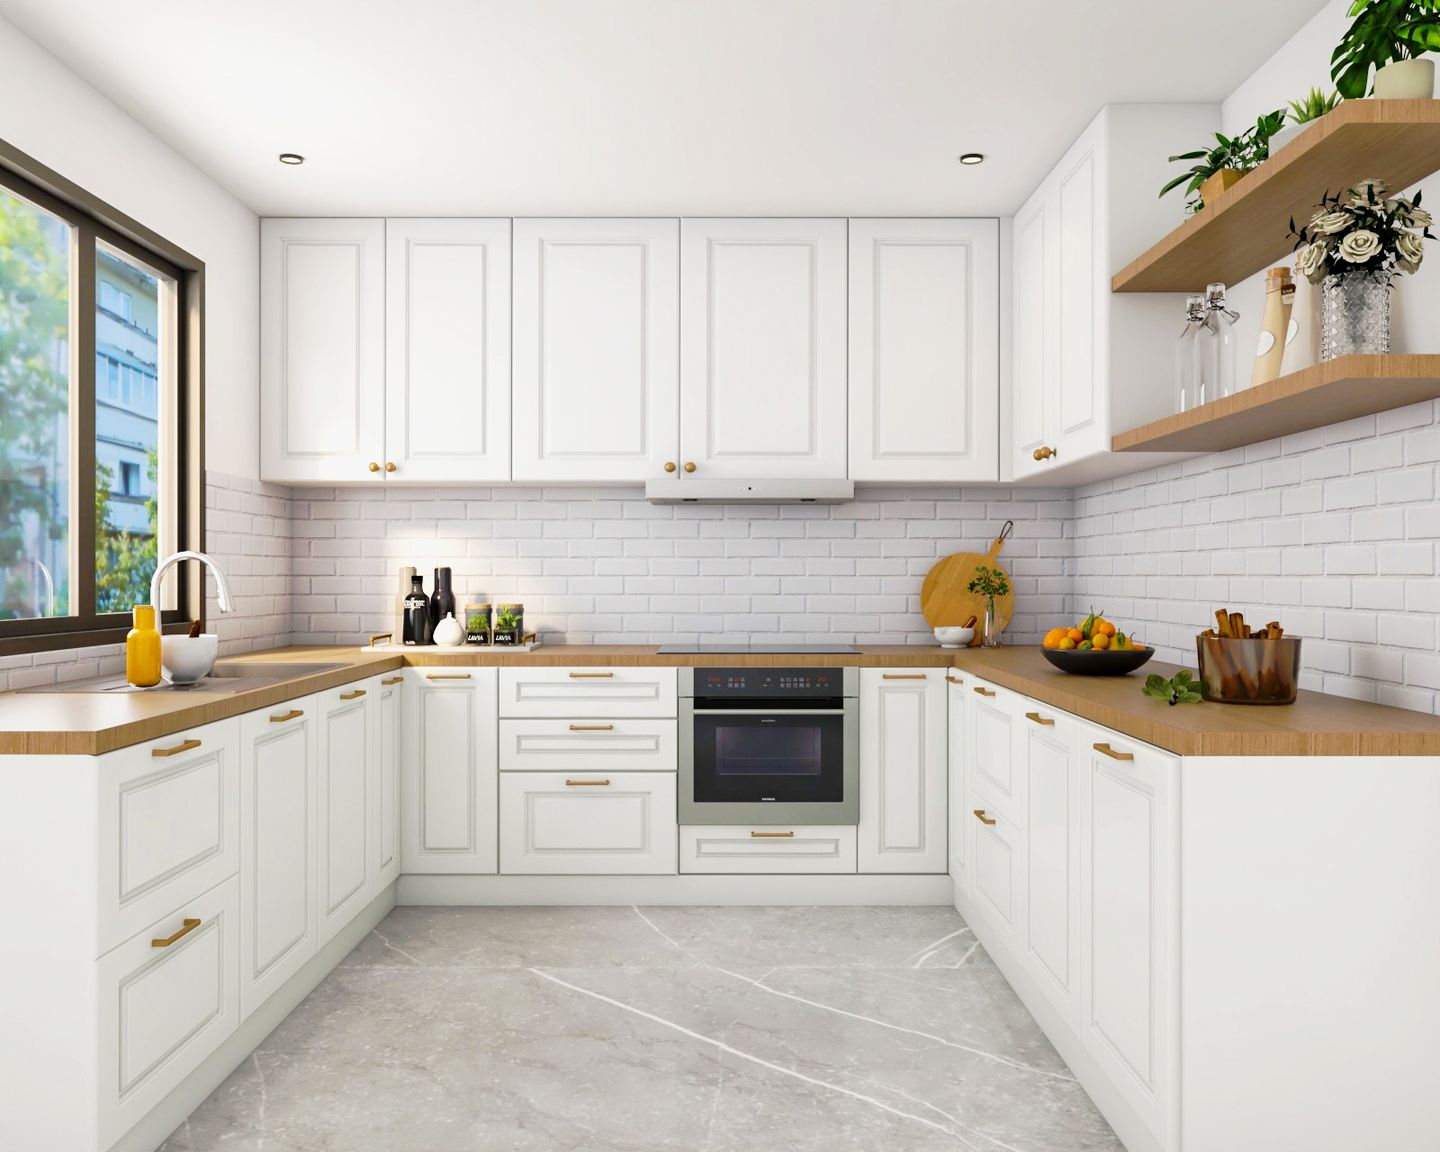 Contemporary Glossy White Kitchen Tile Design - Livspace